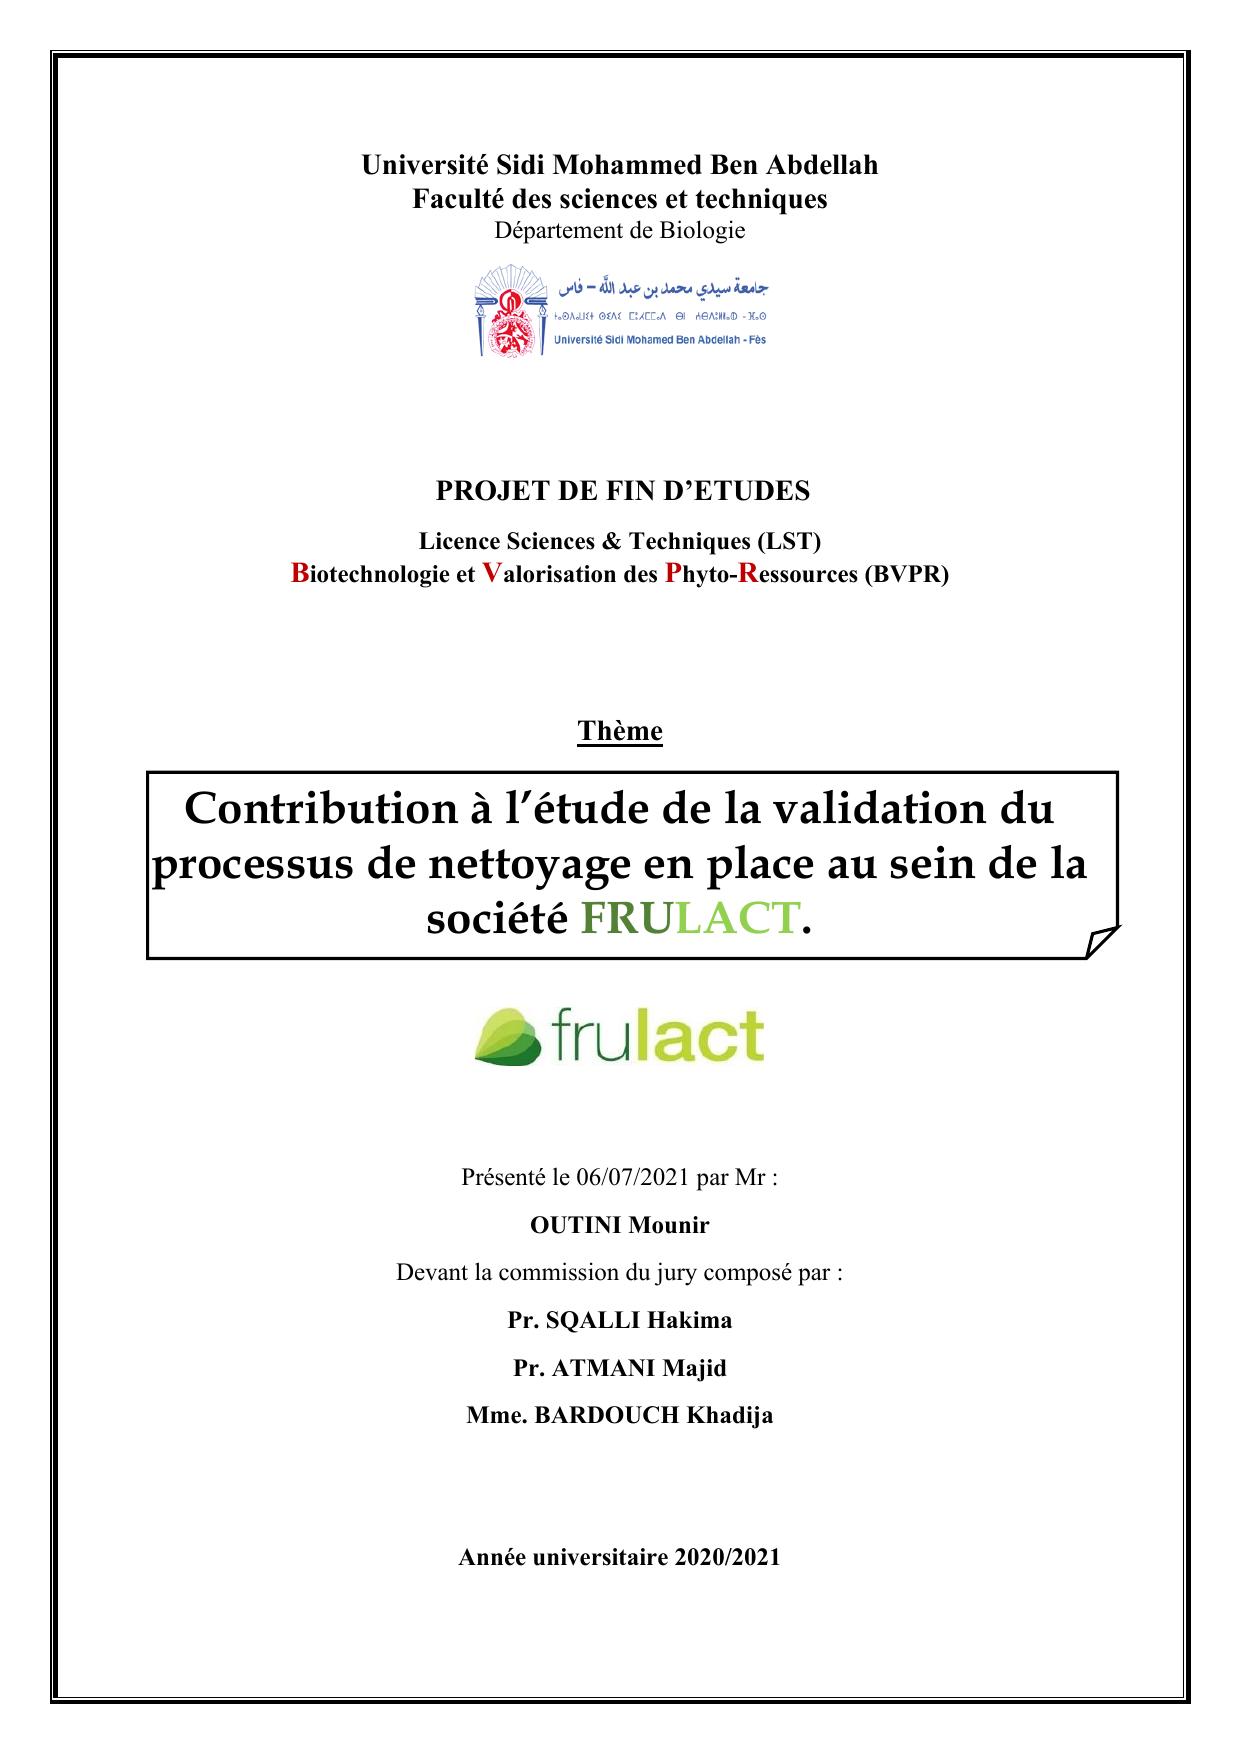 Contribution à l’étude de la validation du processus de nettoyage en place au sein de la société FRULACT.